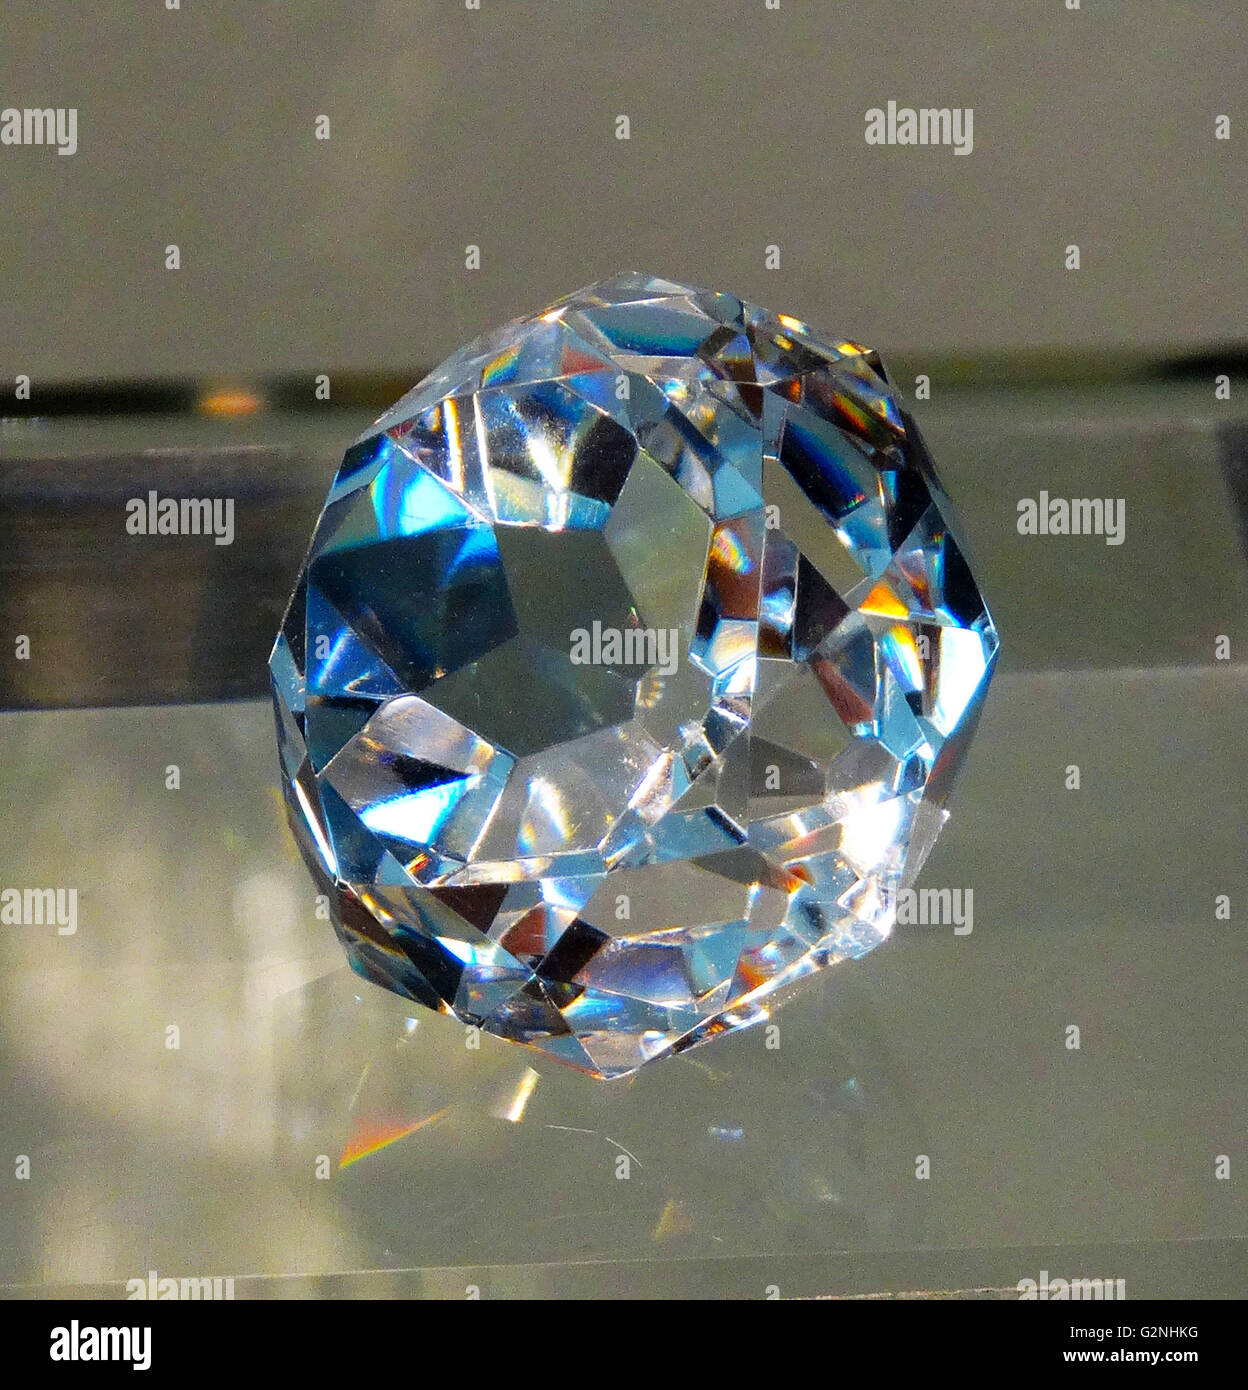 L'Pramaha Vichien Maui diamond, mesurée à 105 carats. Datée 2014 Banque D'Images